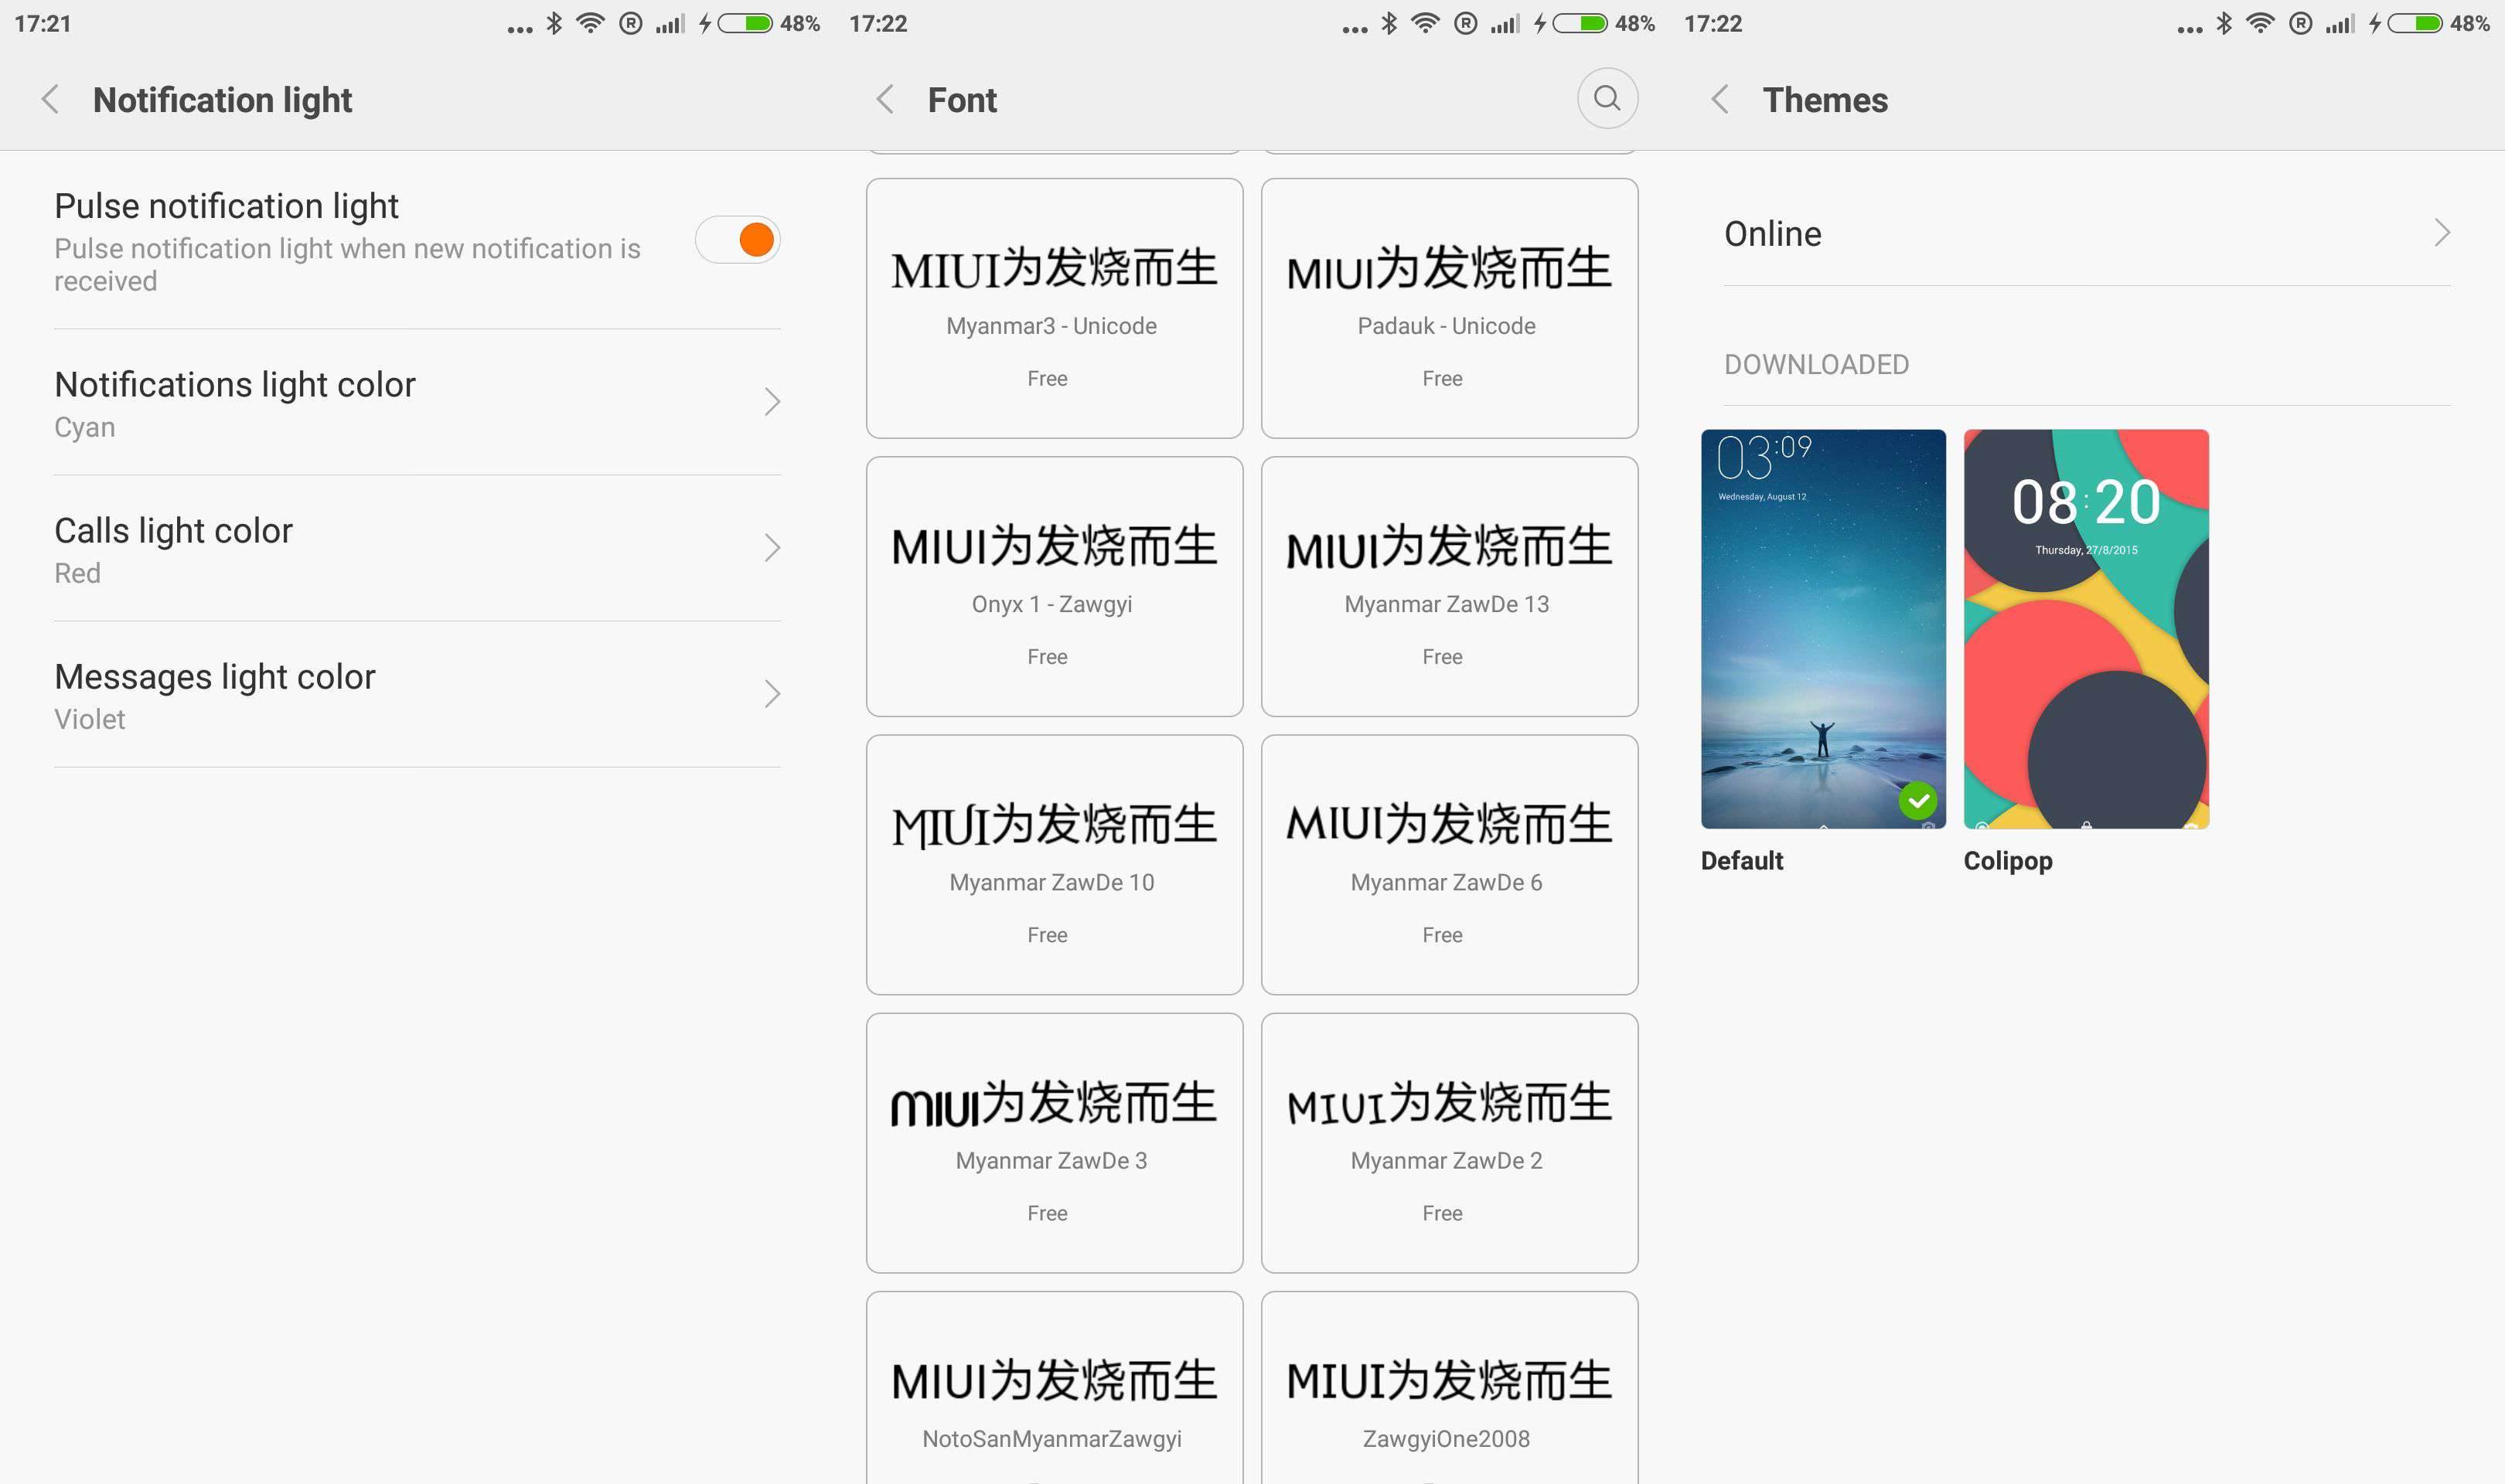 Xiaomi Redmi Note 3 - pierwsze wrażenia polecane, ciekawostki Xiaomi Redmi Note 3, Xiaomi, Specyfikacja, recenzja Xiaomi Redmi Note 3, pierwsze wrażenia Xiaomi Redmi Note 3, pierwsze wrażenia, cena  Jednym z najnowszych urządzeń mobilnych Xiaomi jest bez wątpliwości model Redmi Note 3, który oficjalnie na pewno nie pojawi się u nas w kraju, ale dzięki uprzejmości i nawiązaniu współpracy ze sklepem Geekbuying.com udało mi się uzyskać egzemplarz do testów. Zazwyczaj nie dzielę się pierwszymi wrażeniami z użytkowania każdego urządzenia przed jego recenzją, ale tym razem będzie to wyjątek. Personalizacja